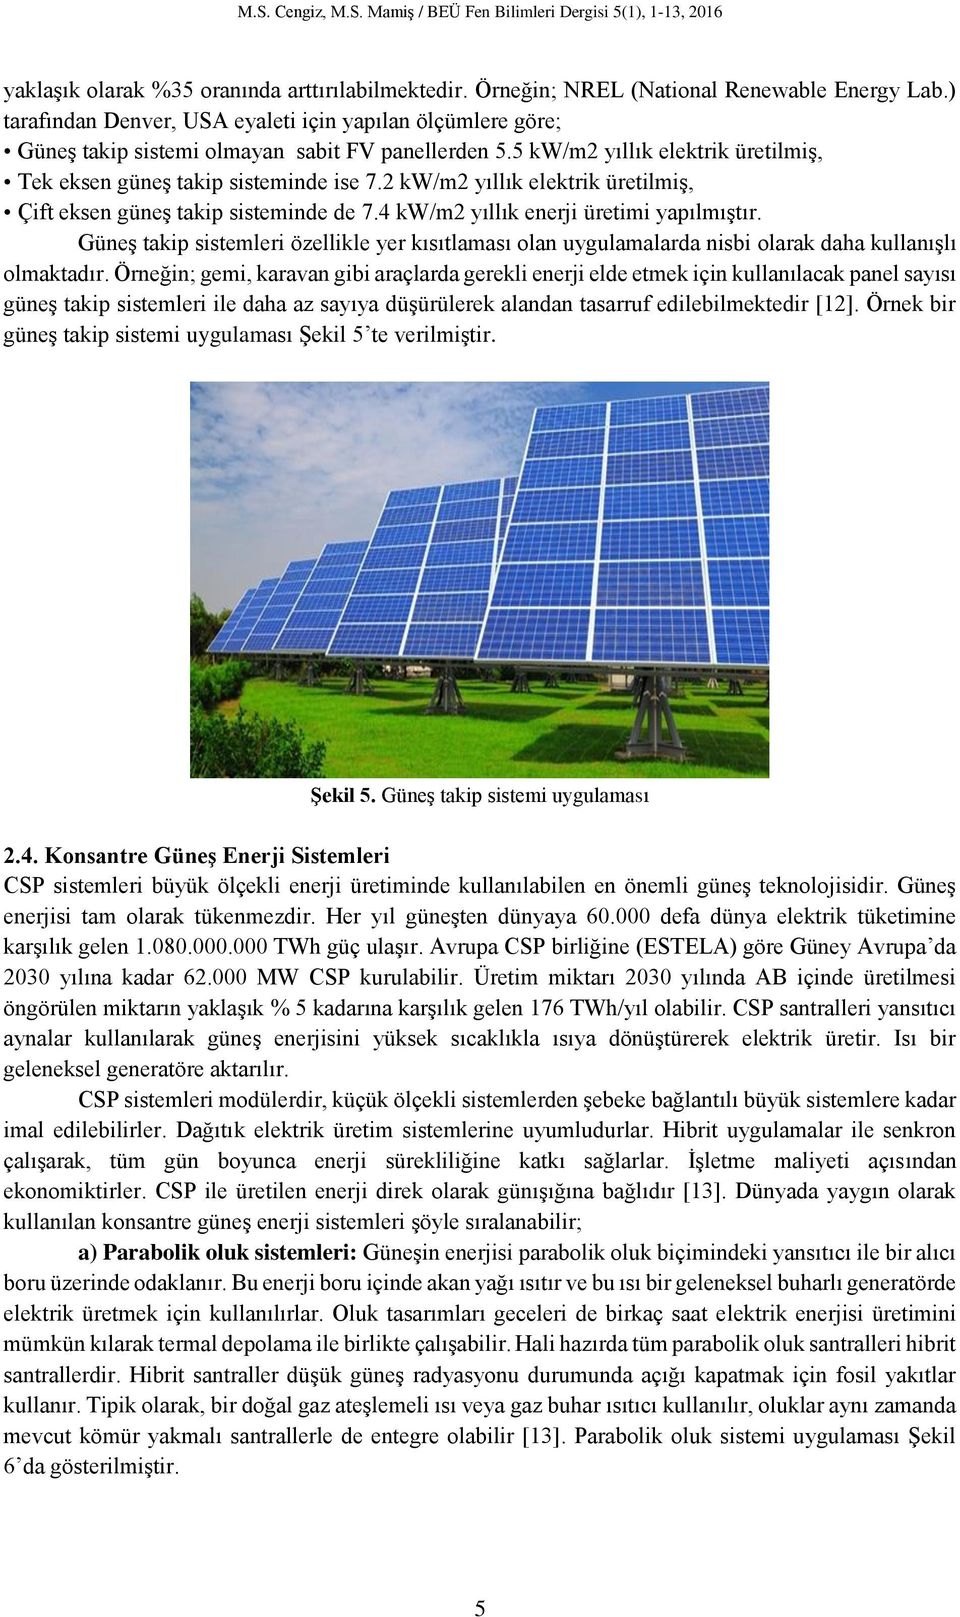 2 kw/m2 yıllık elektrik üretilmiş, Çift eksen güneş takip sisteminde de 7.4 kw/m2 yıllık enerji üretimi yapılmıştır.